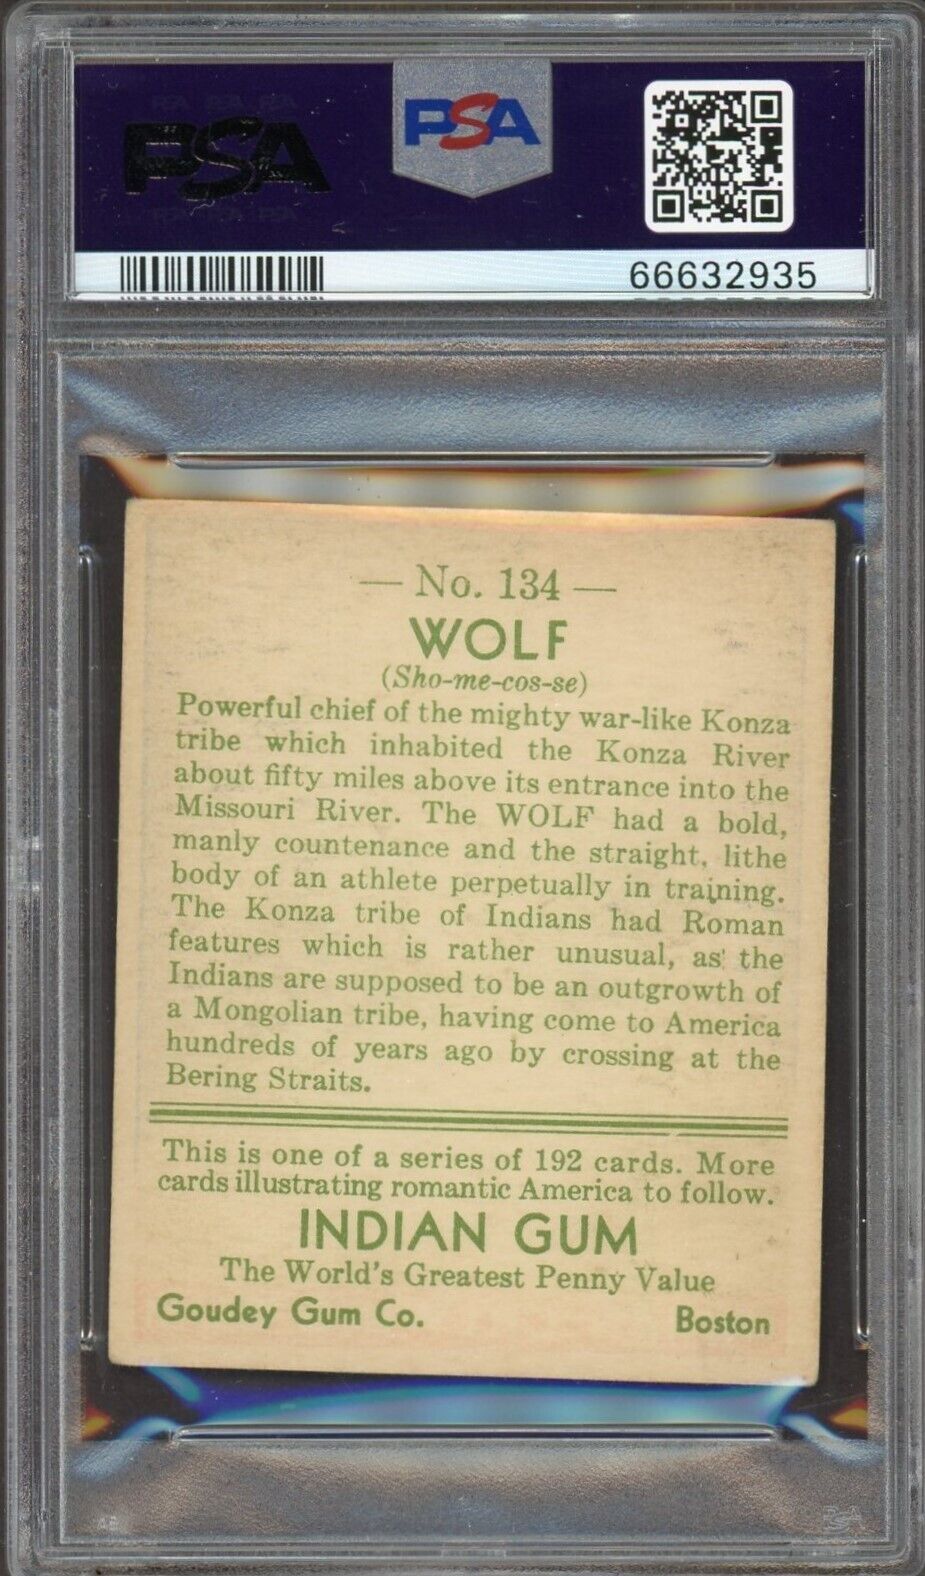 1933 Goudey Indian Gum (Series of 192) #134 WOLF (PSA 4 VG/EX)